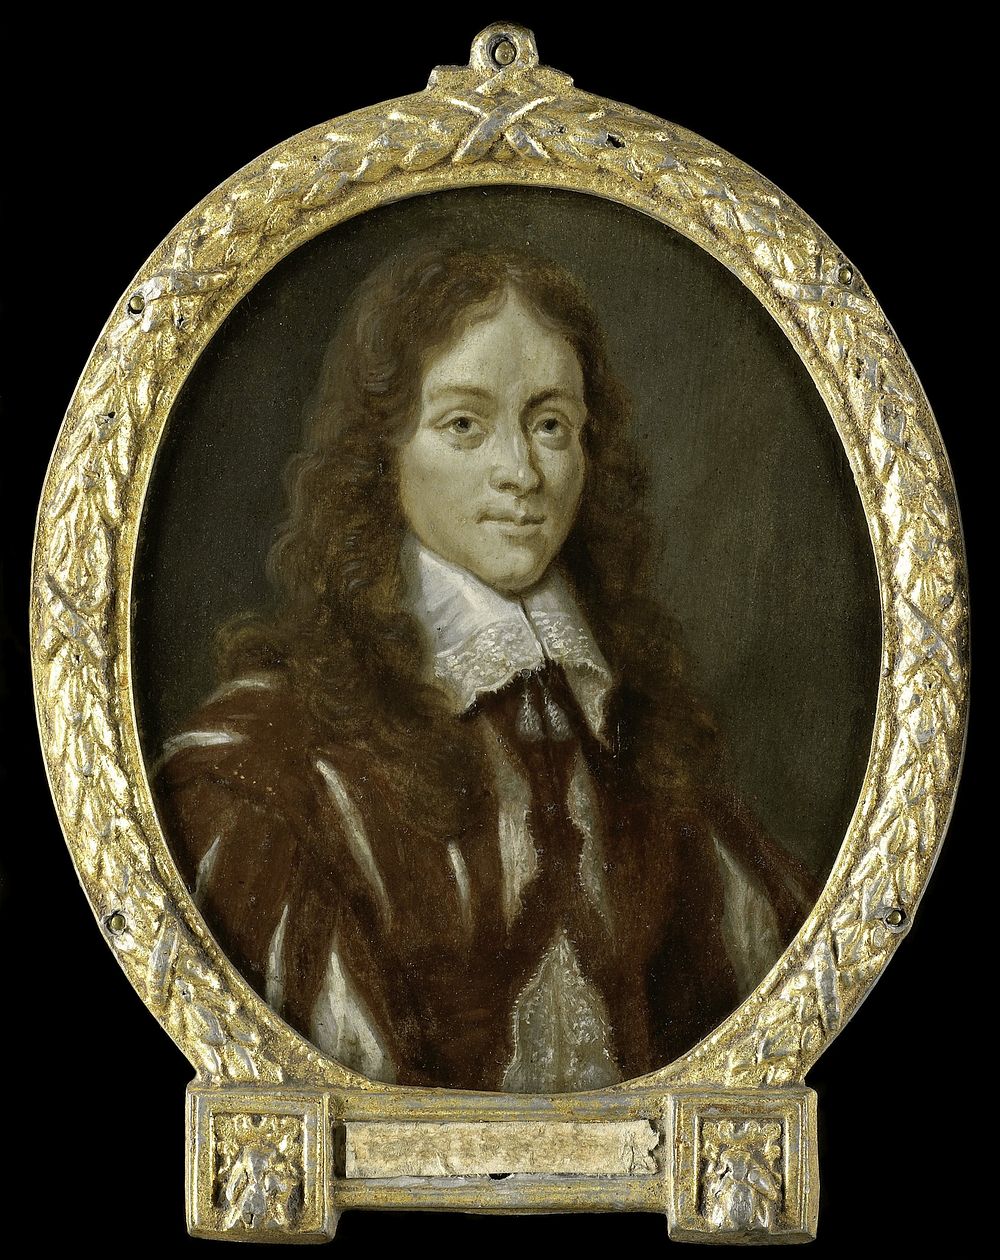 Portrait of Caspar van Kinschot, Poet (1700 - 1732) by Arnoud van Halen and Wenceslaus Hollar